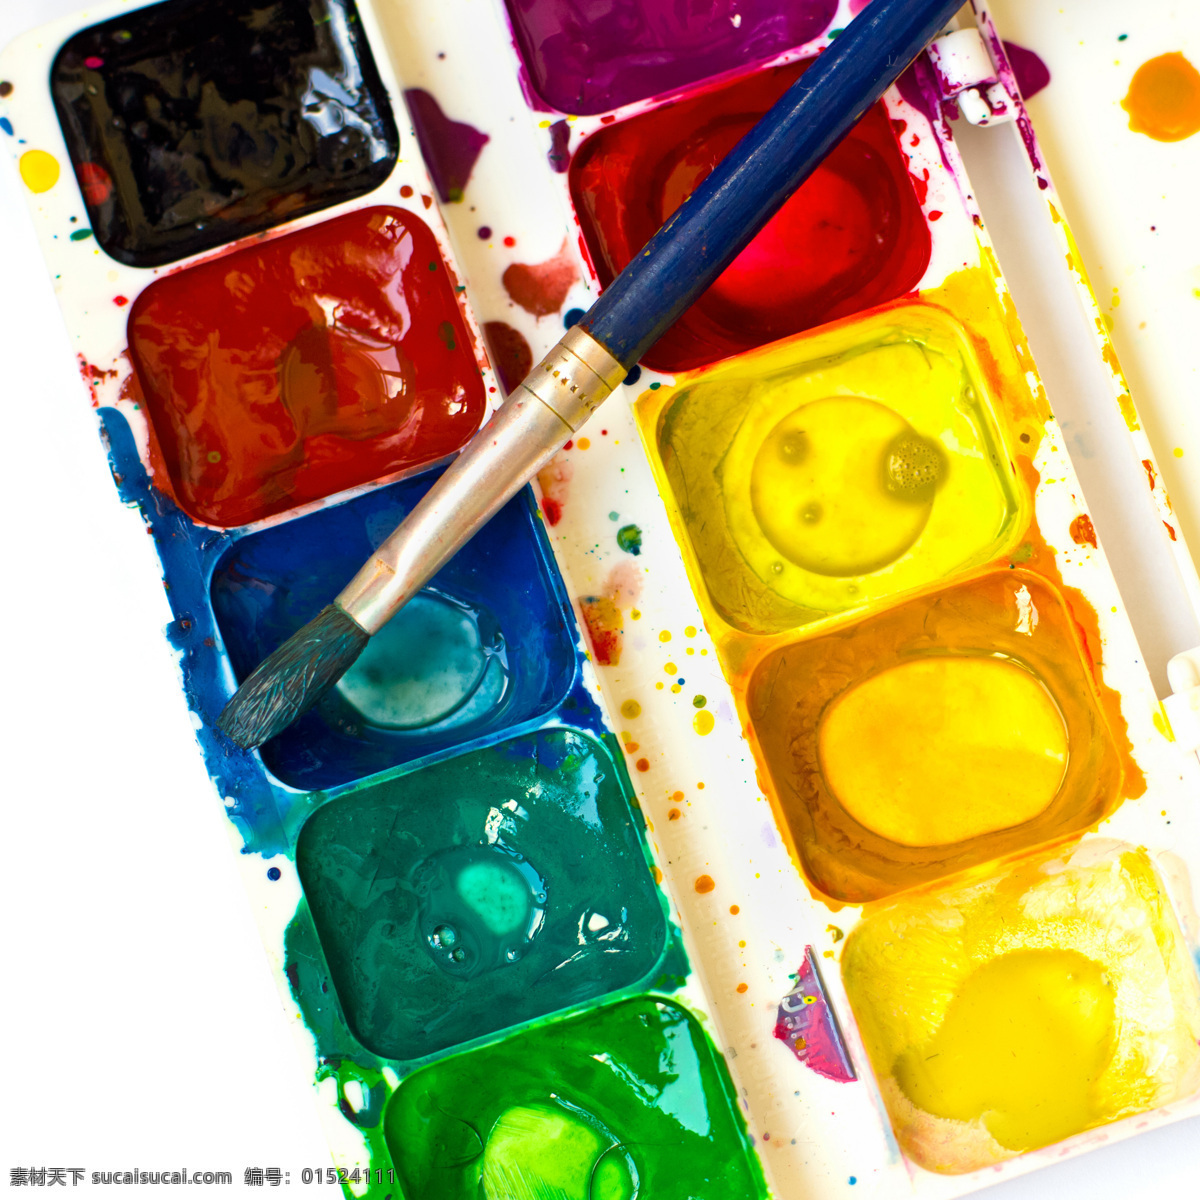 颜料 画笔 色彩 彩色 油画 水粉画 笔触 底纹背景 调色板 其他类别 生活百科